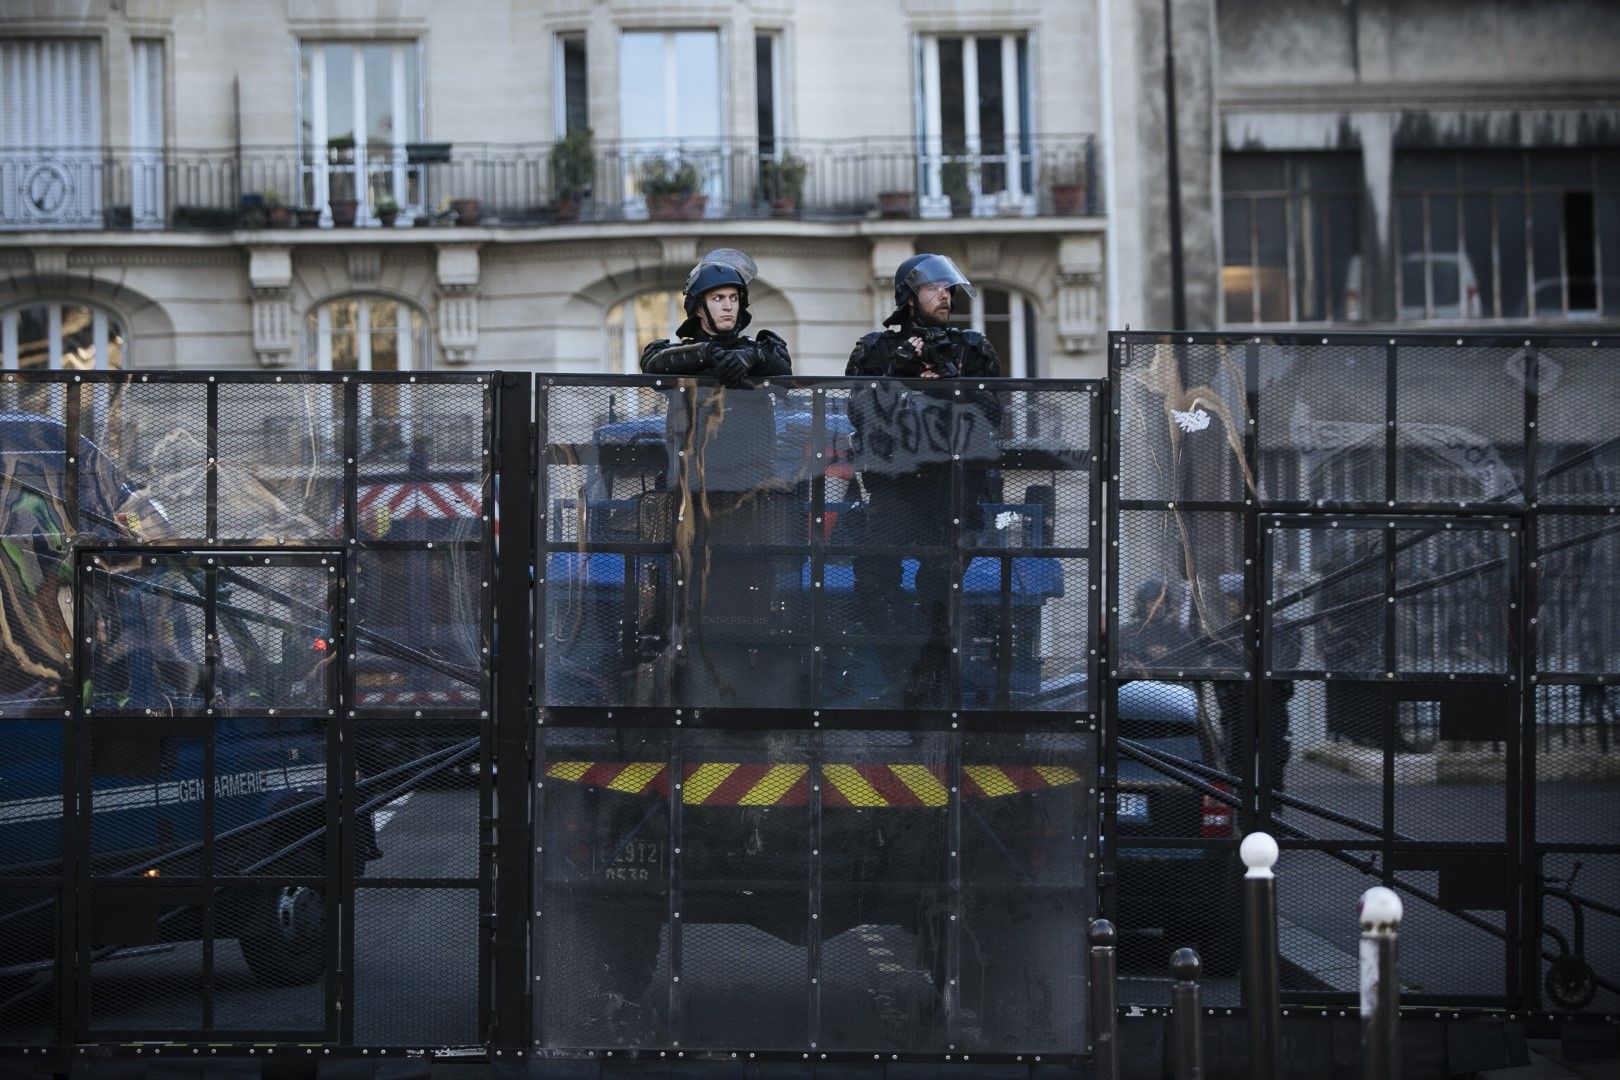 Френски спец полицаи застанали край барикада на улица в Париж по време на демонстрация на протестиращи